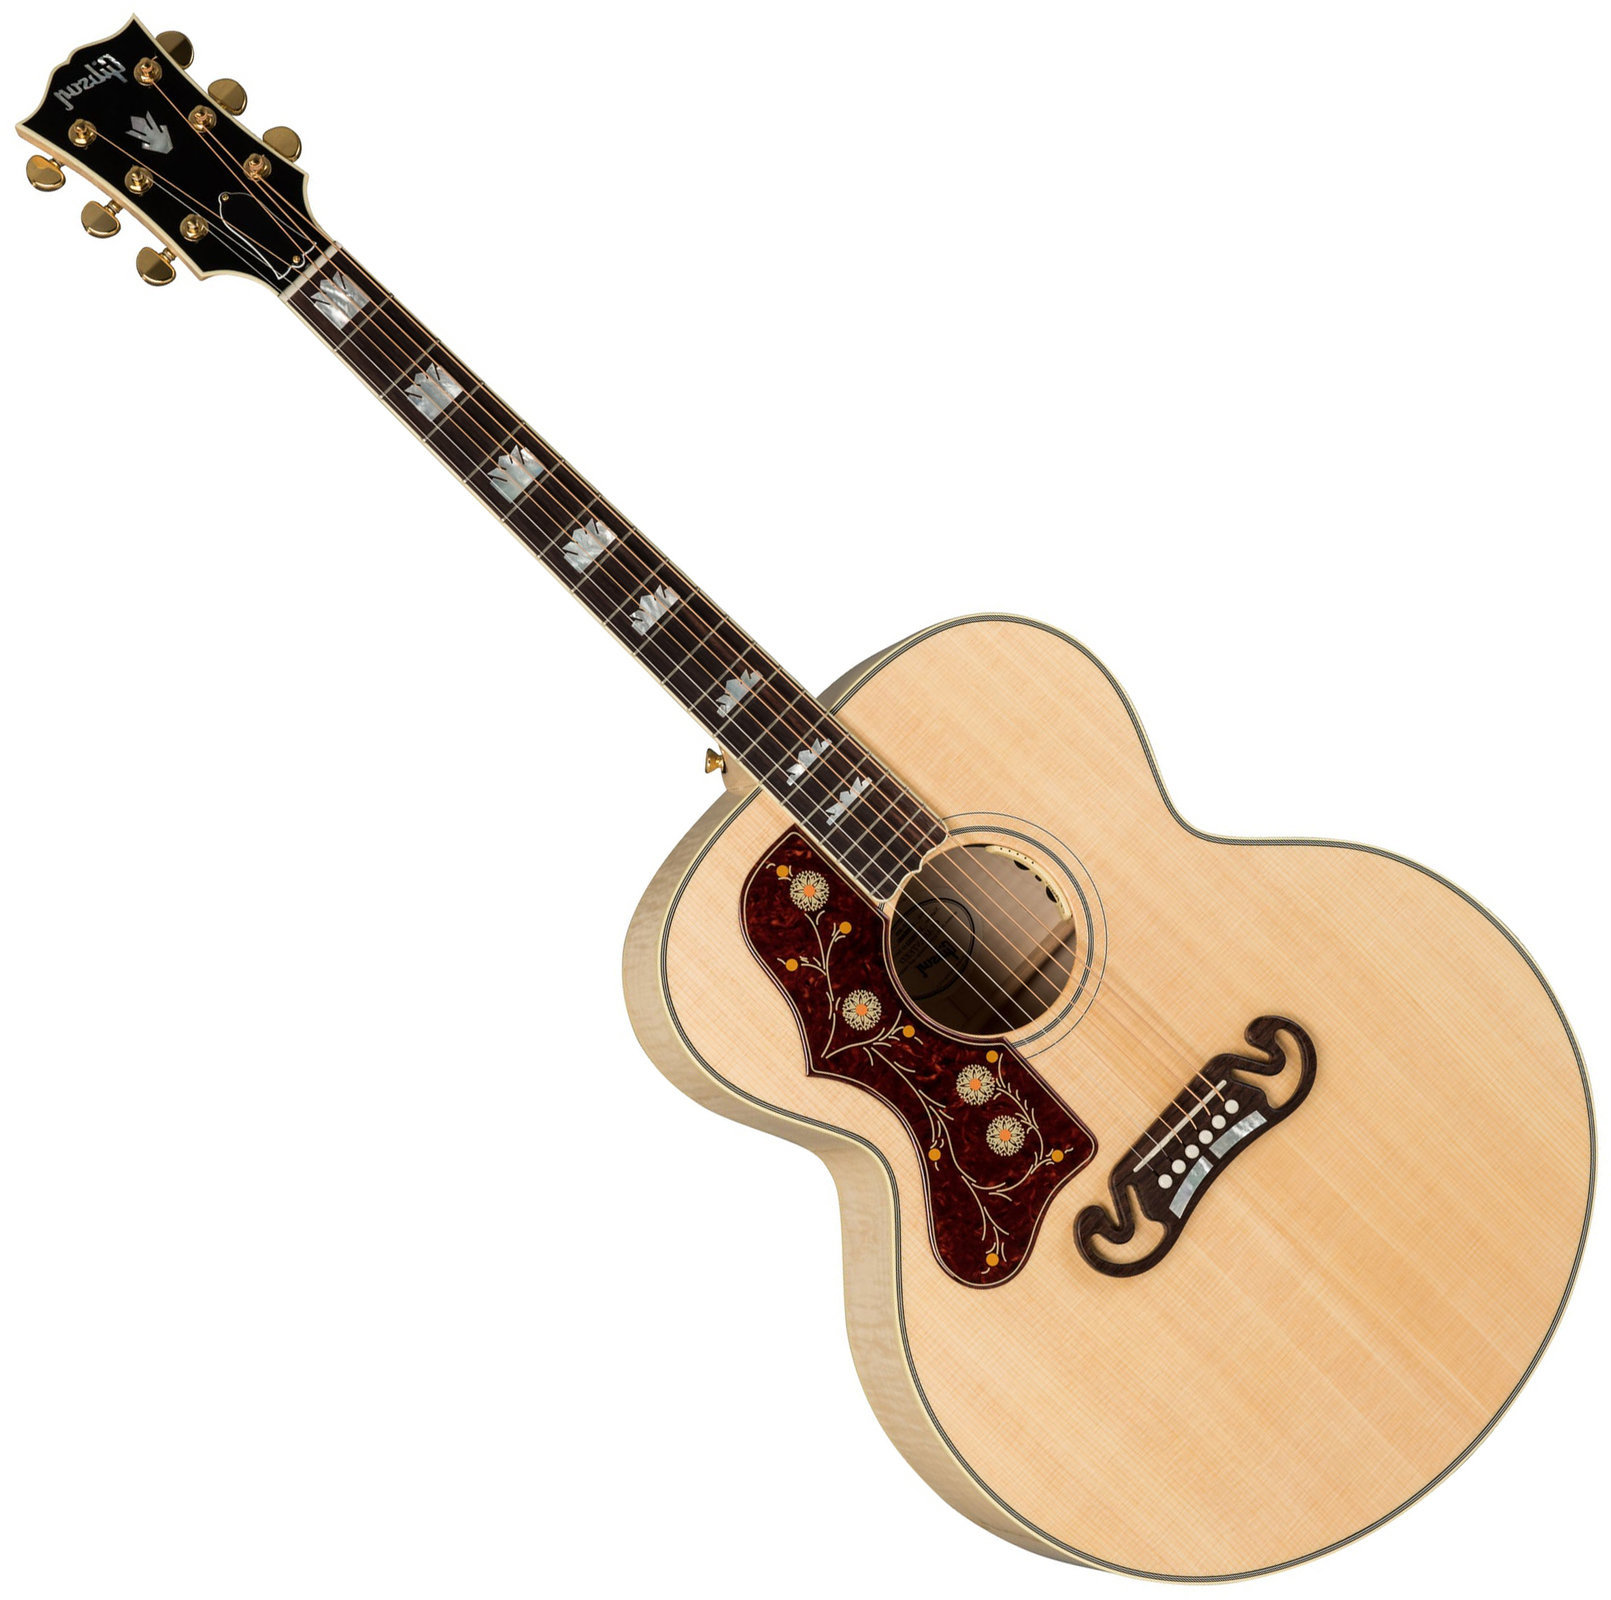 Jumbo elektro-akoestische gitaar Gibson J-200 Standard 2019 Antique Natural Lefty